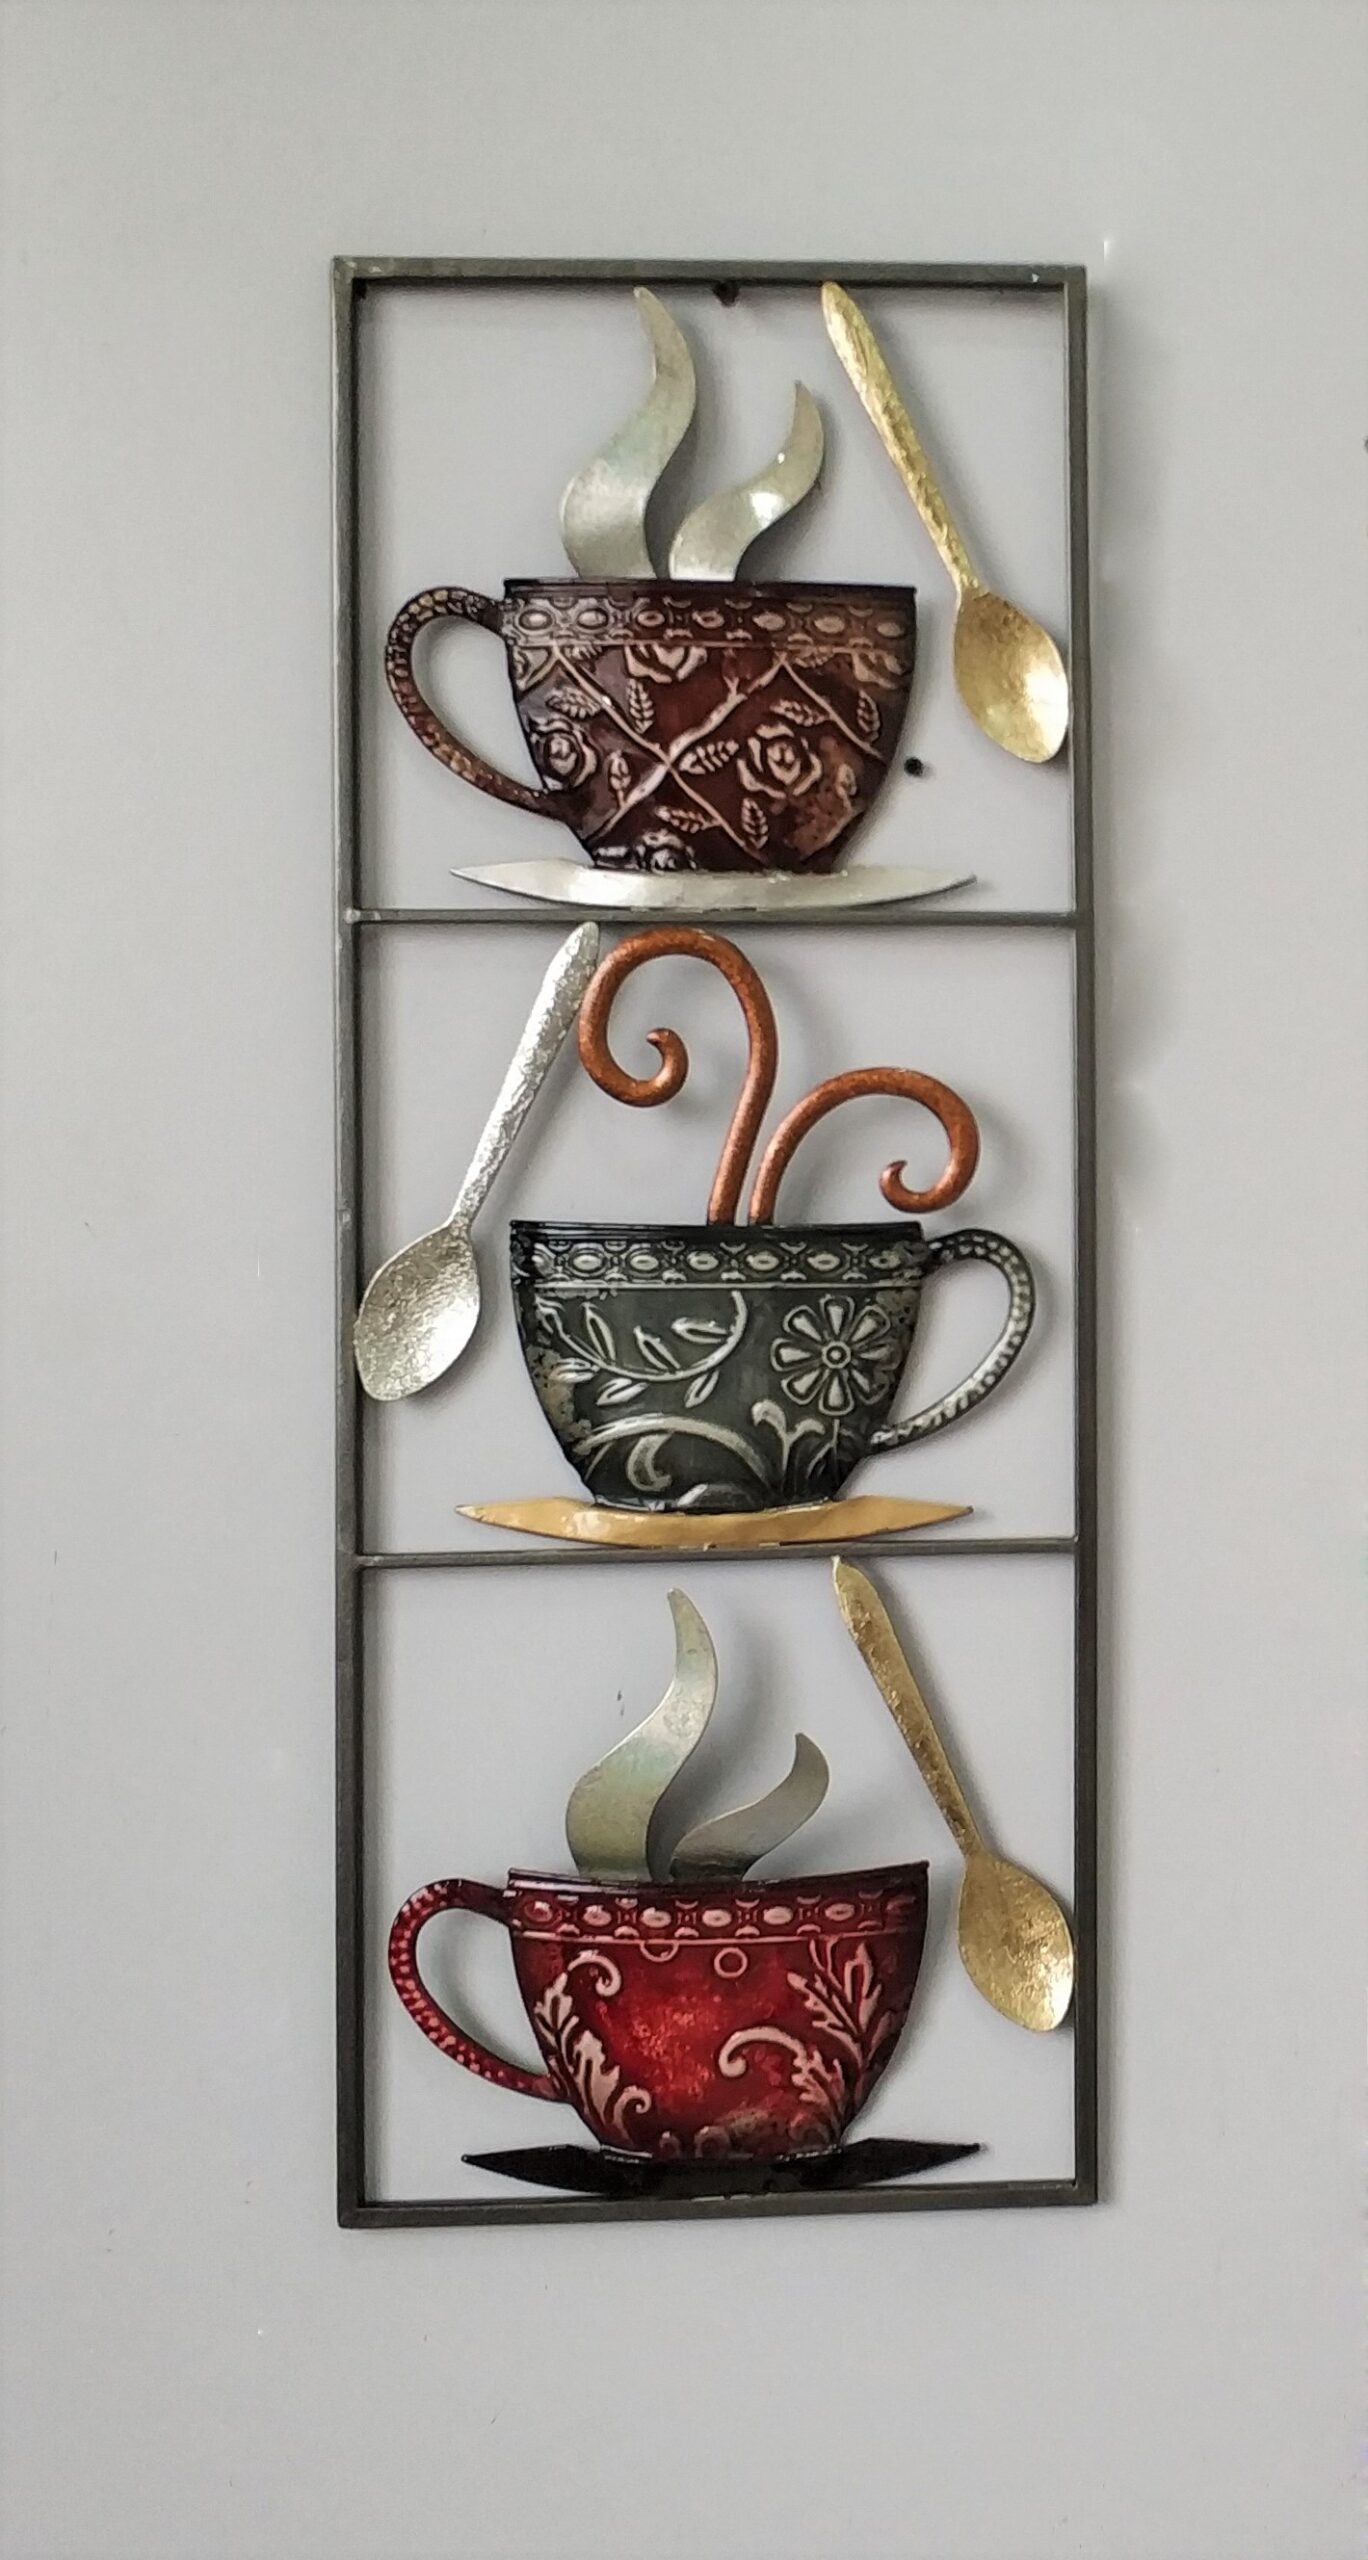 Verrassend genoeg Kapper Mechanica Metalen wanddecoratie "More Tea than Coffee" te koop @ Betaalbarekunst.nl.  Goedkoop en speels stukje kunst van metaal voor aan de muur.